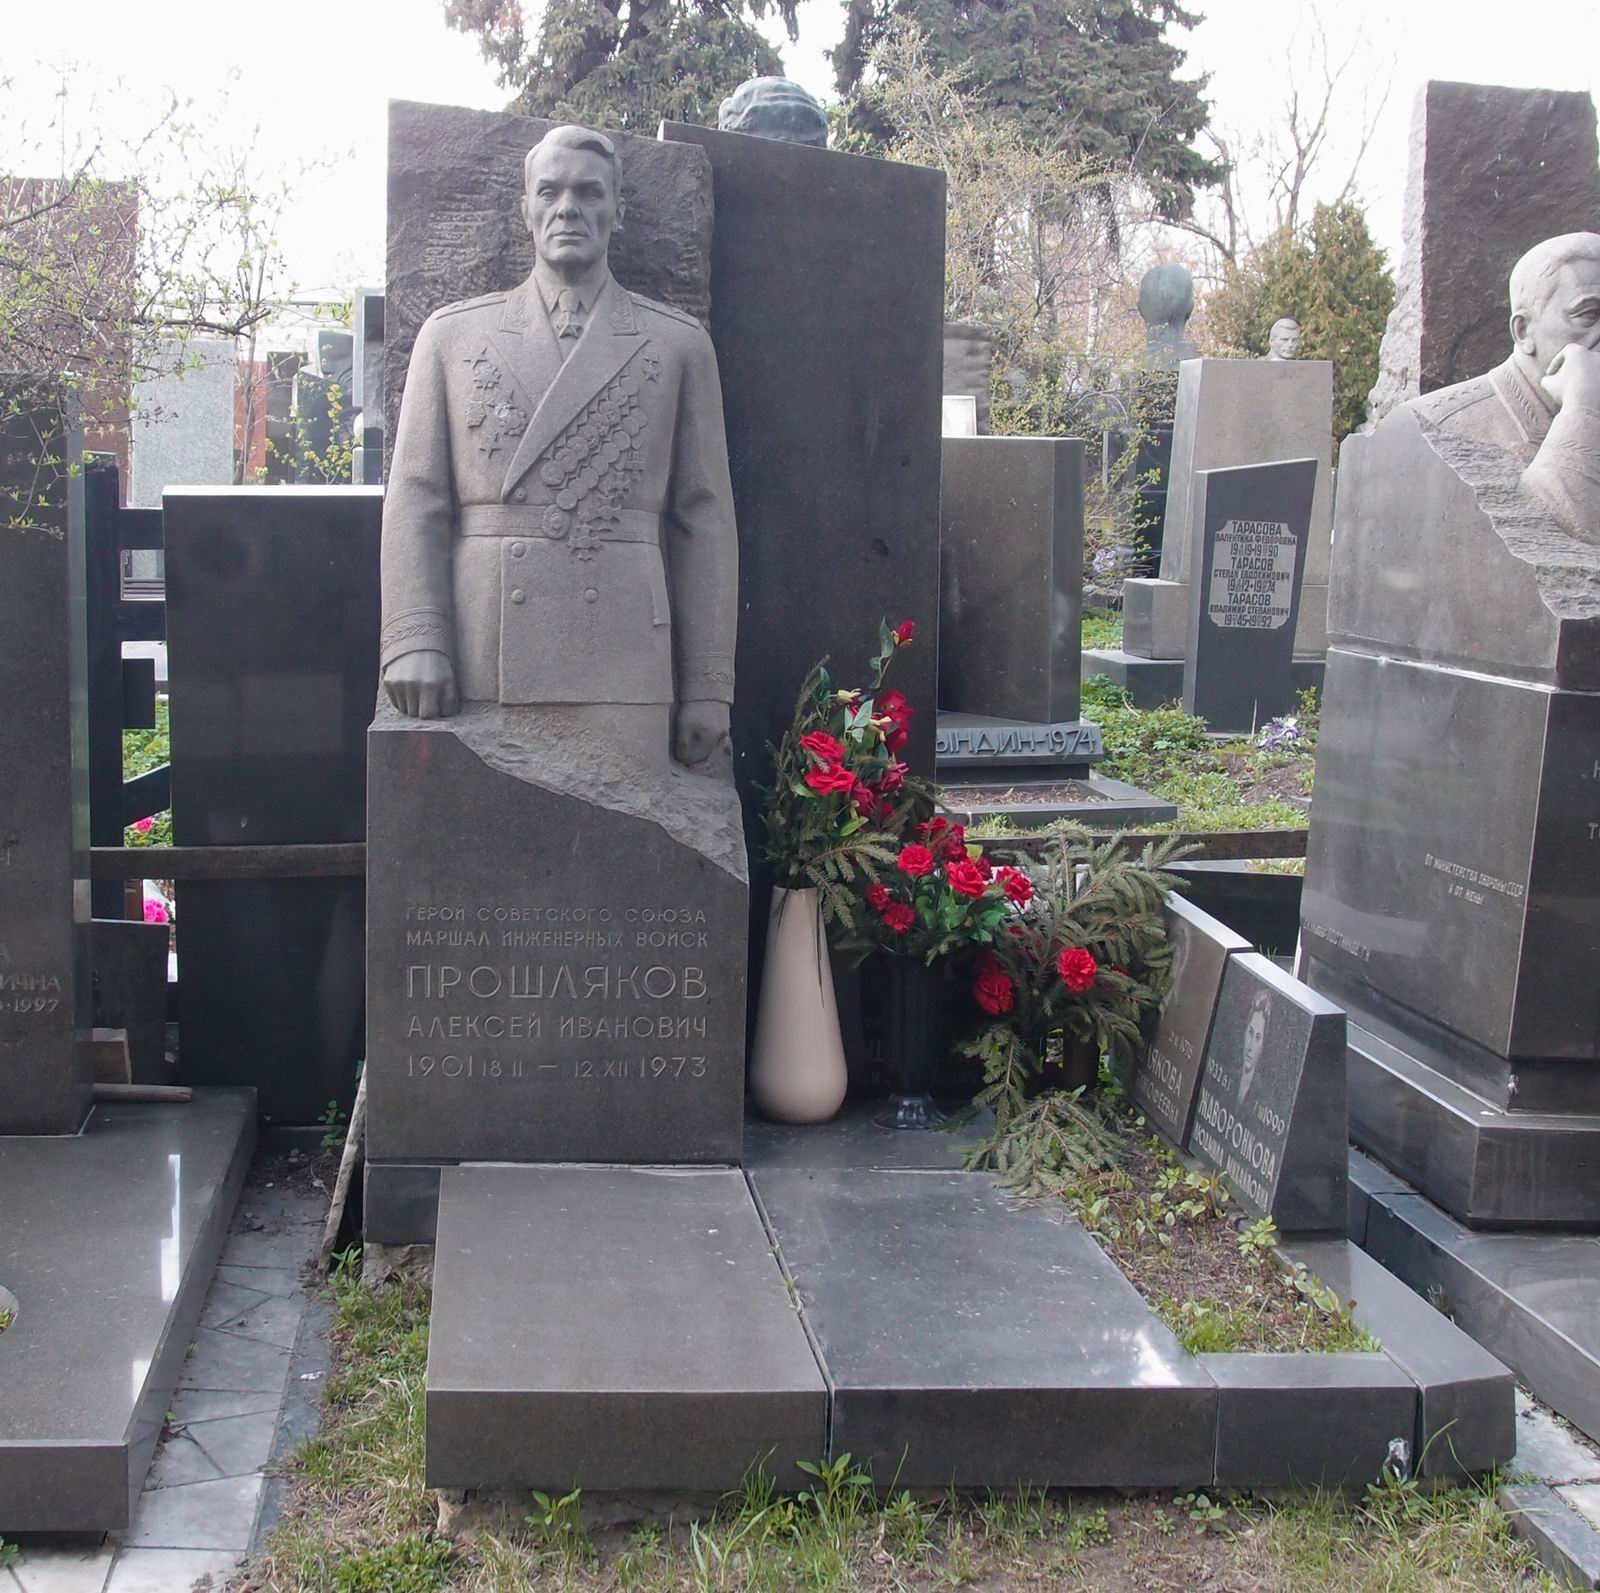 Памятник на могиле Прошлякова А.И. (1901–1973), ск. Ю.Иванов, арх. Б.Кушков (по эскизу Б.Прошлякова), на Новодевичьем кладбище (7–7–16).